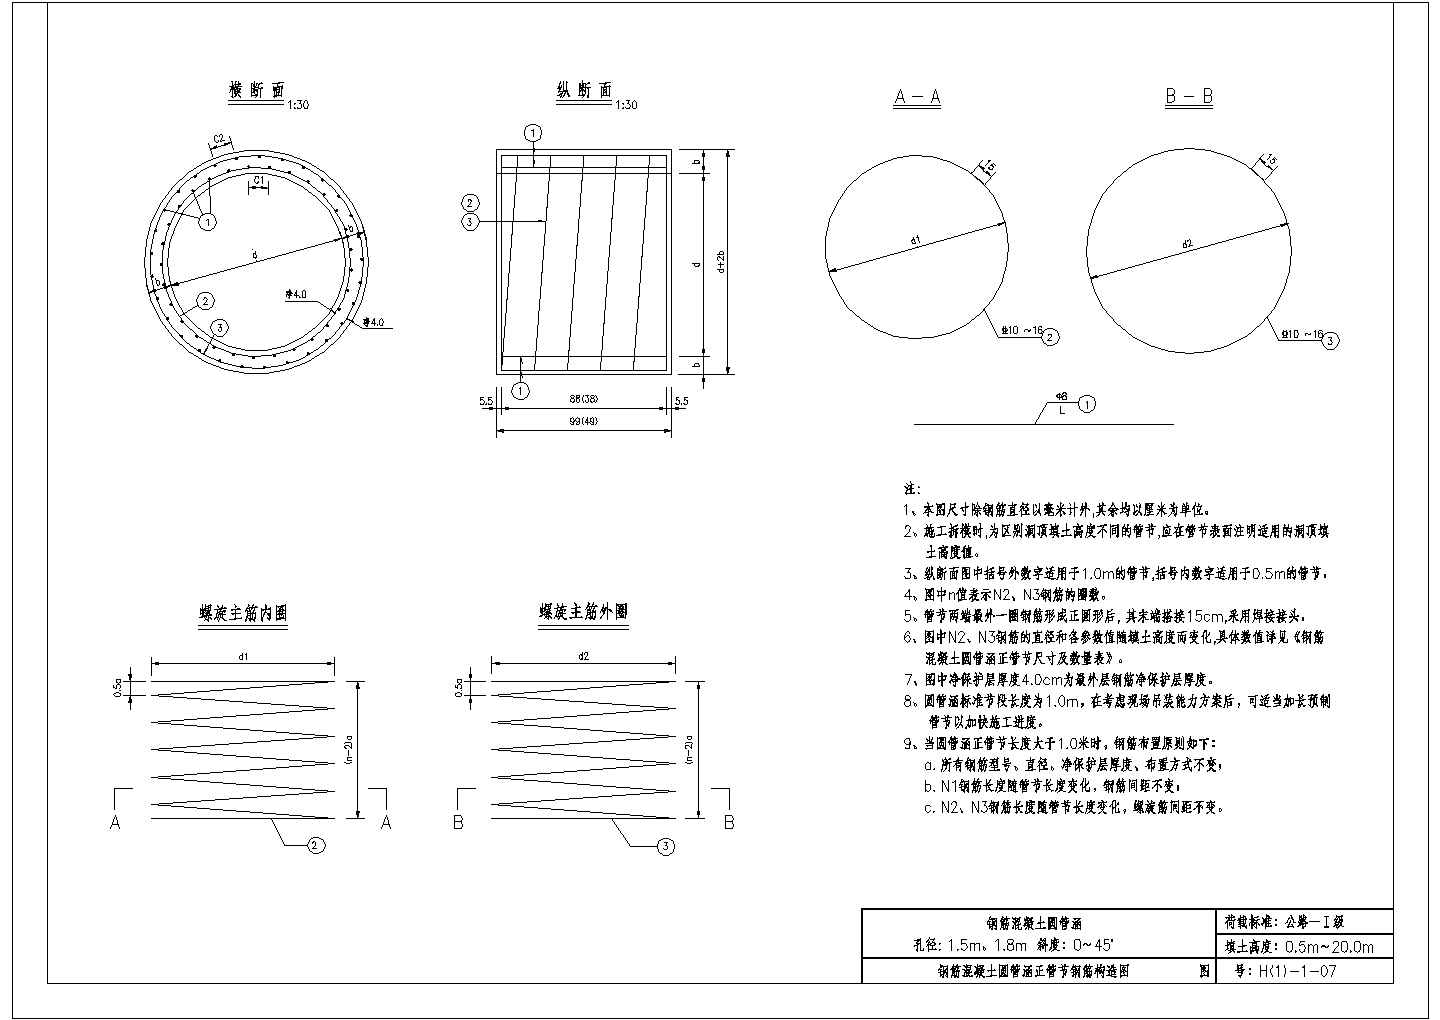 涵洞设计参考图《钢筋混凝土圆管涵》第一册（CAD版）